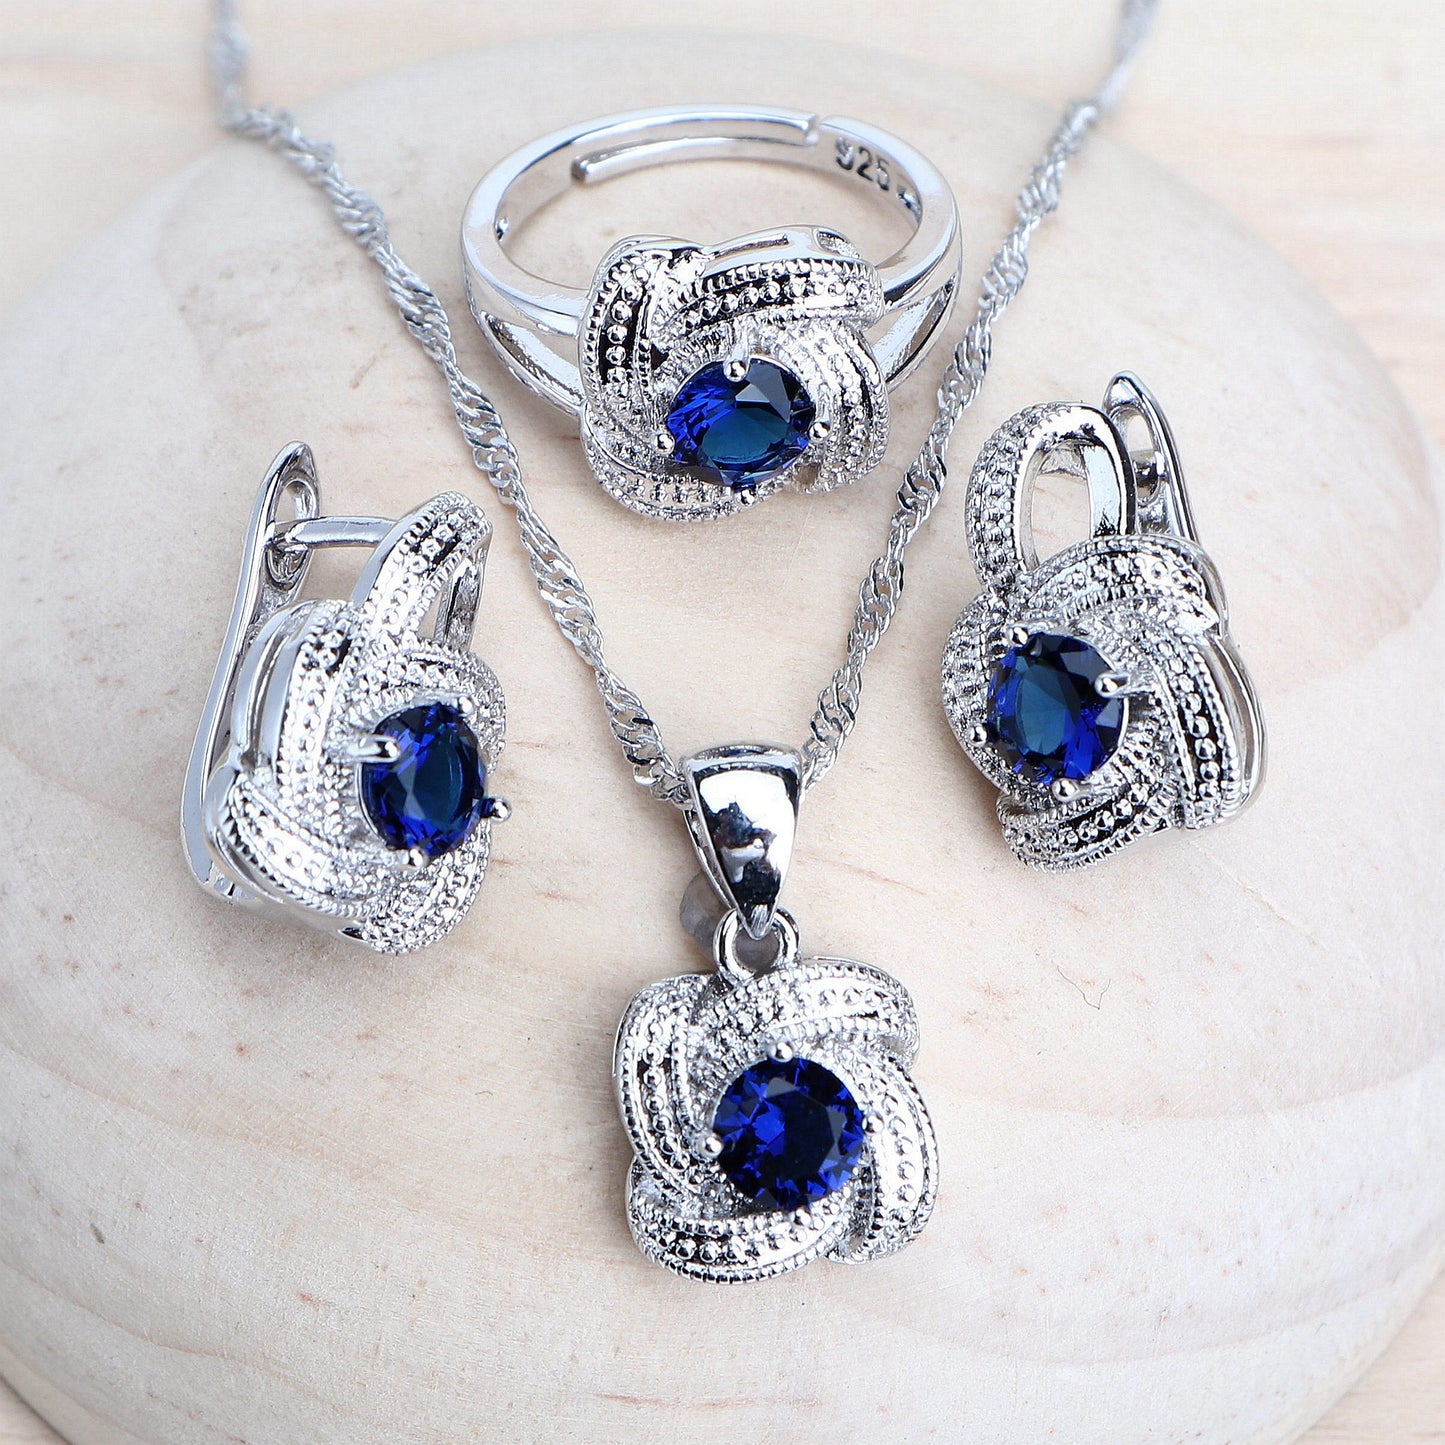 Blue Zirconia Women Jewelry Sets 925 Sterling Silver Wedding Bridal Costume Jewellery Earrings Rings Bracelets Pendant Necklace